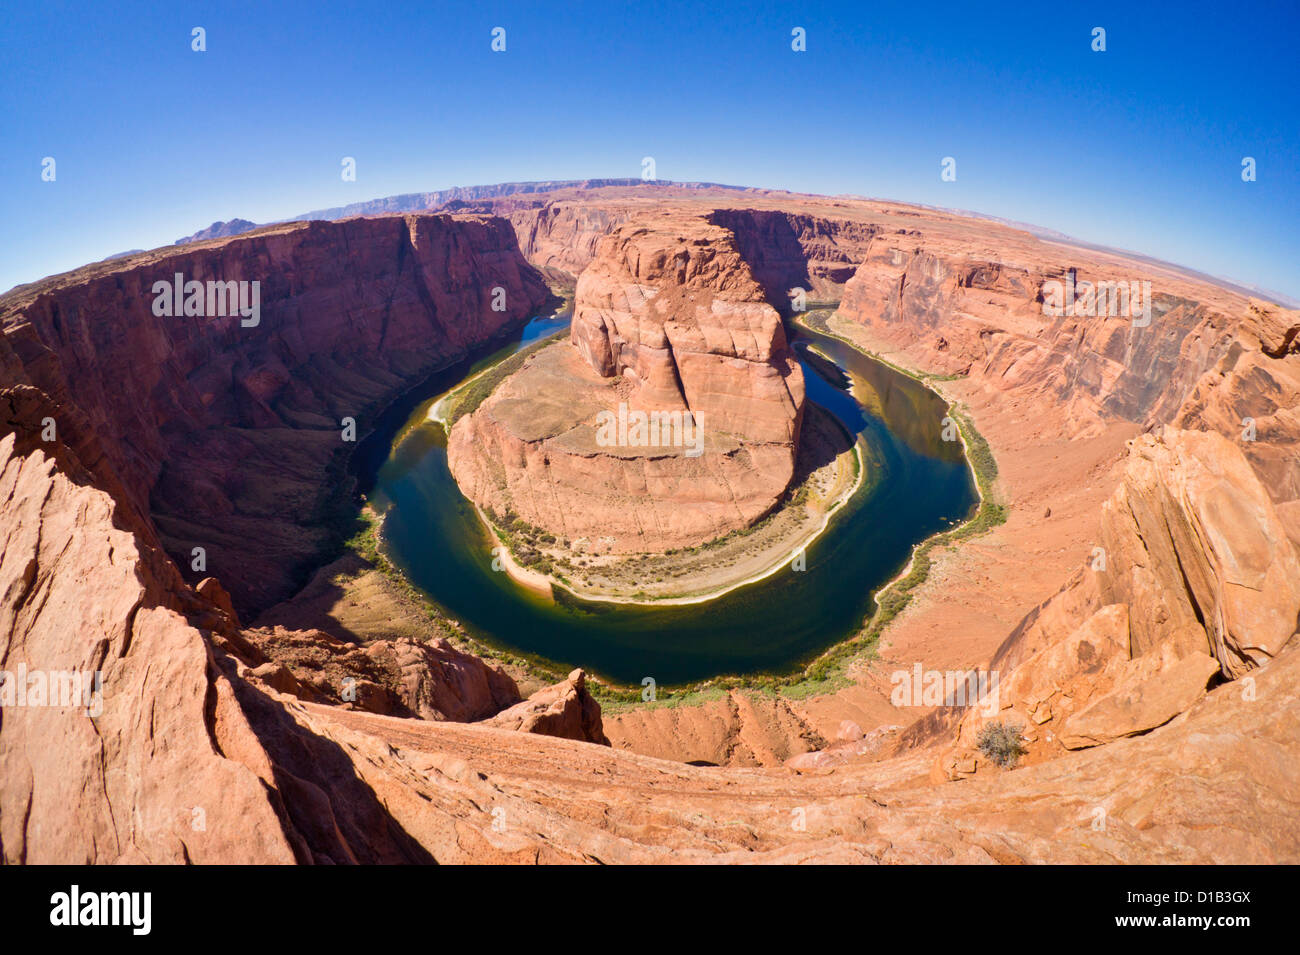 Der Horseshoe Bend auf dem Colorado River bei Page Arizona USA Vereinigte Staaten von Amerika Stockfoto